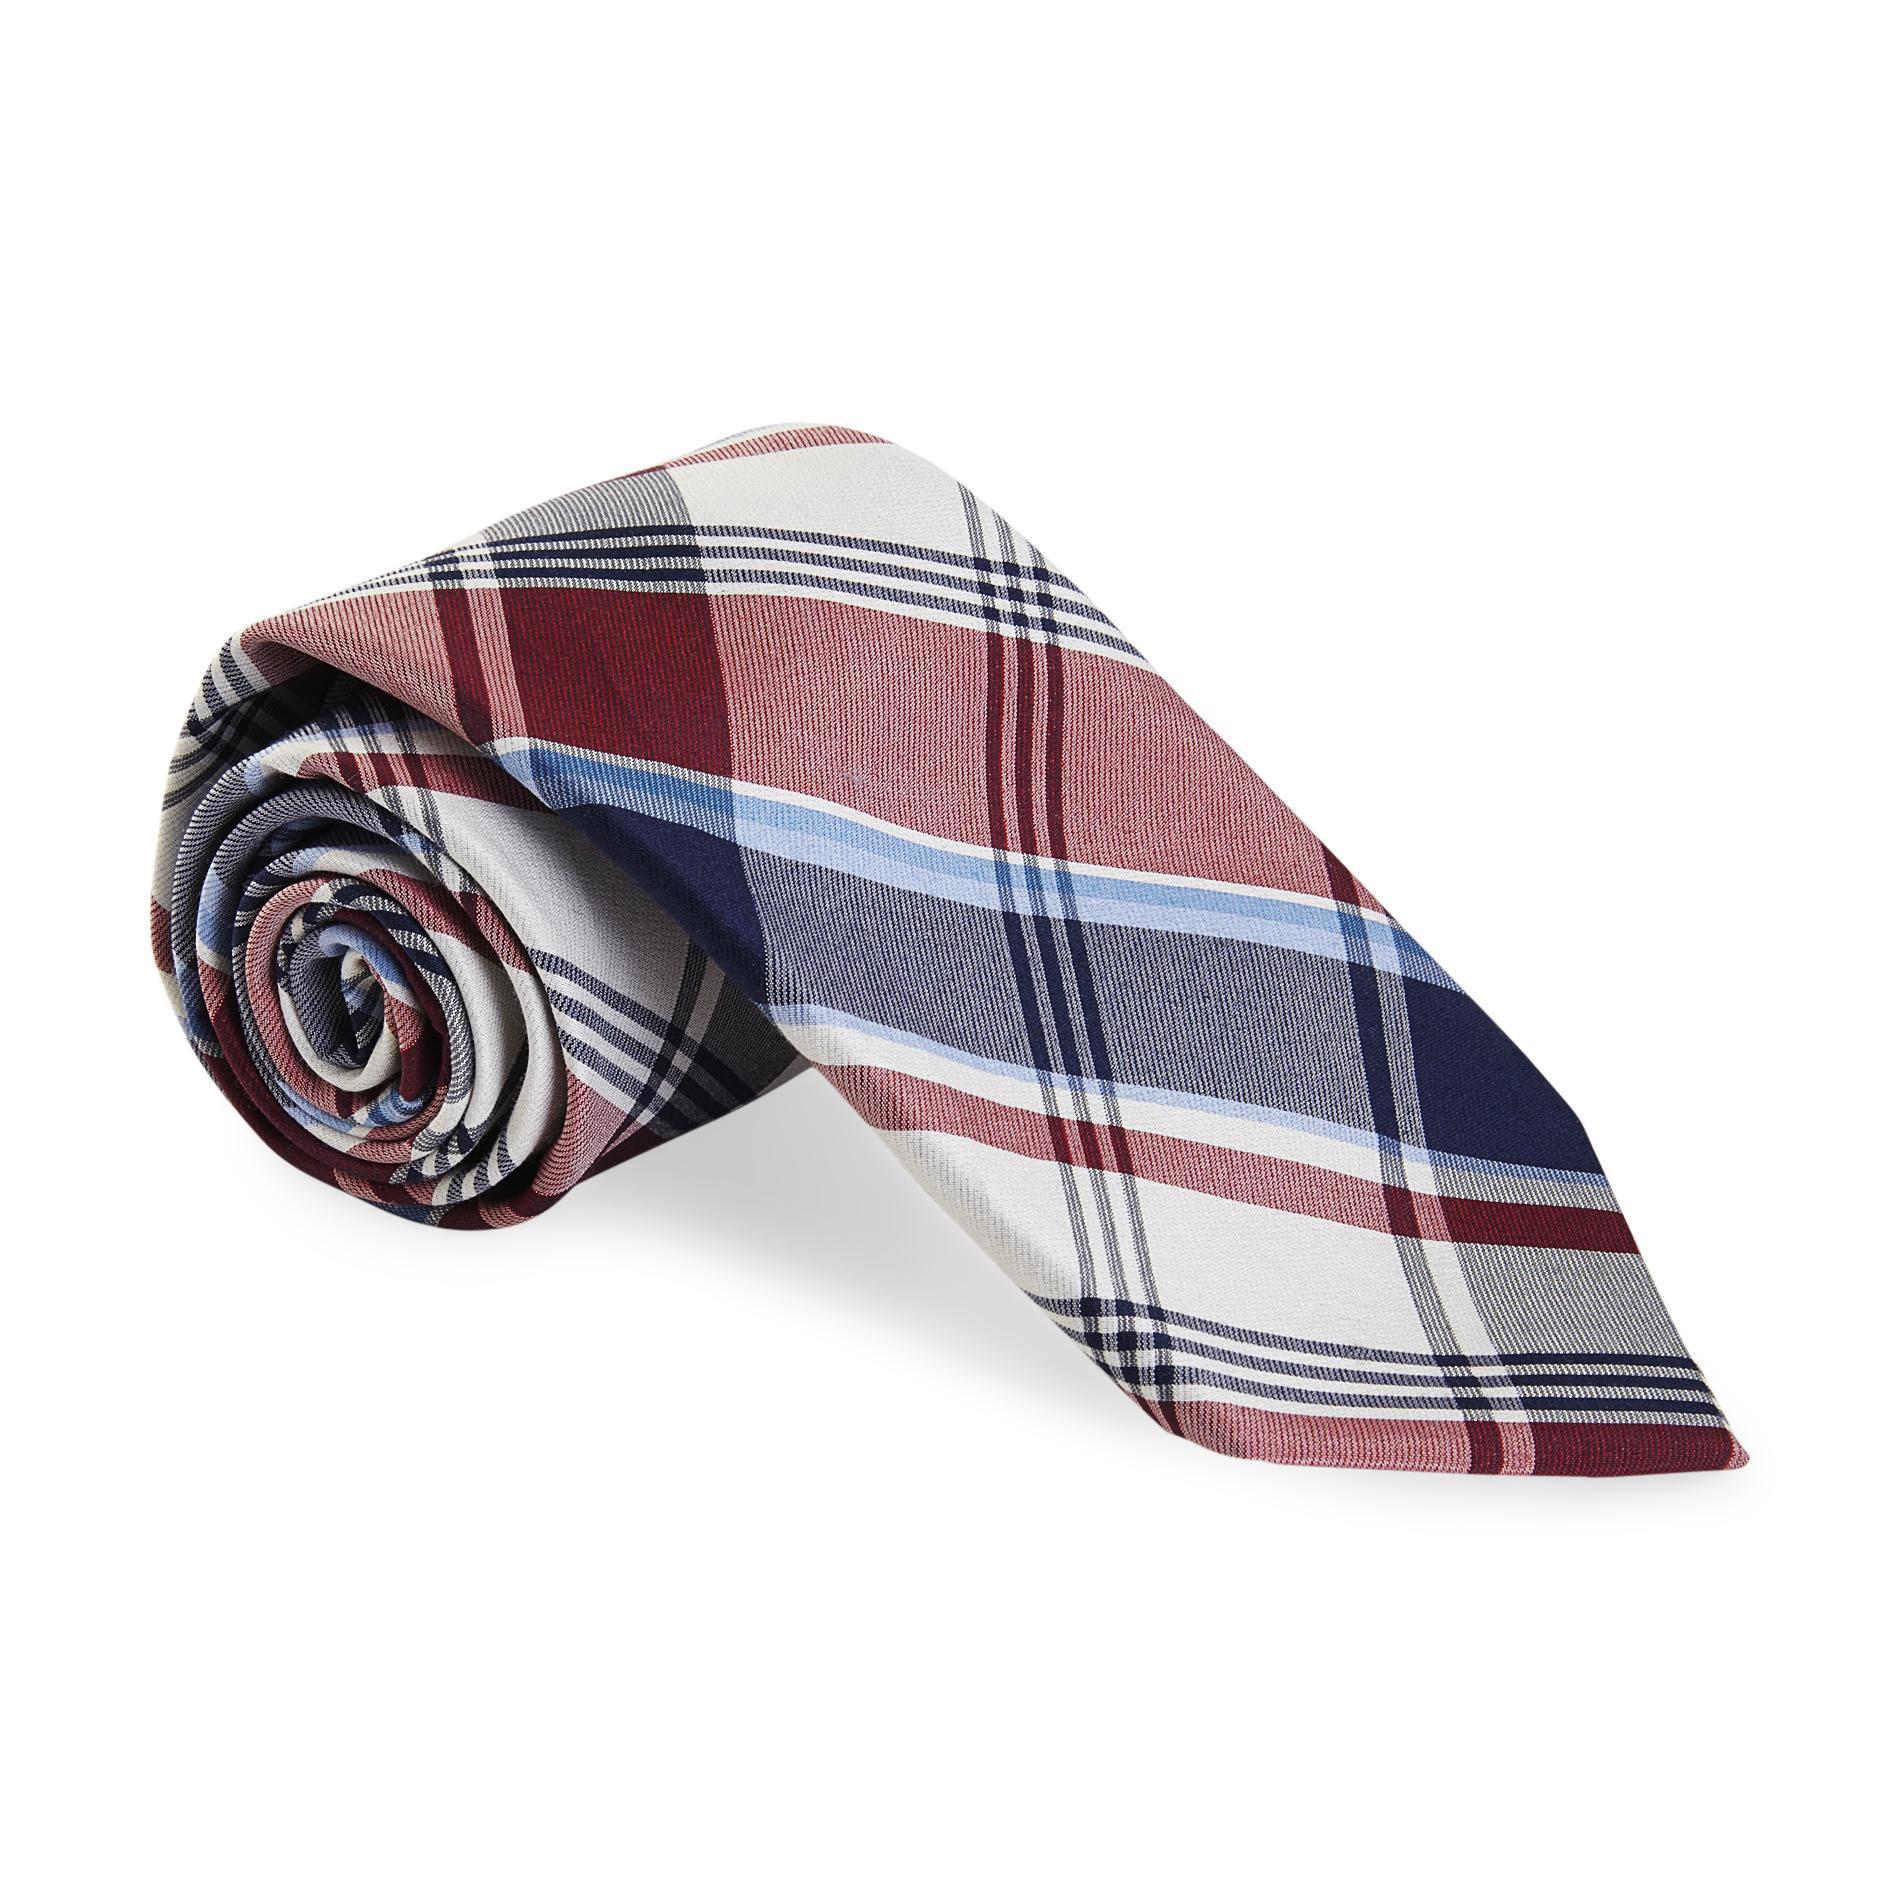 U.S. Polo Assn. Men's Necktie - Plaid